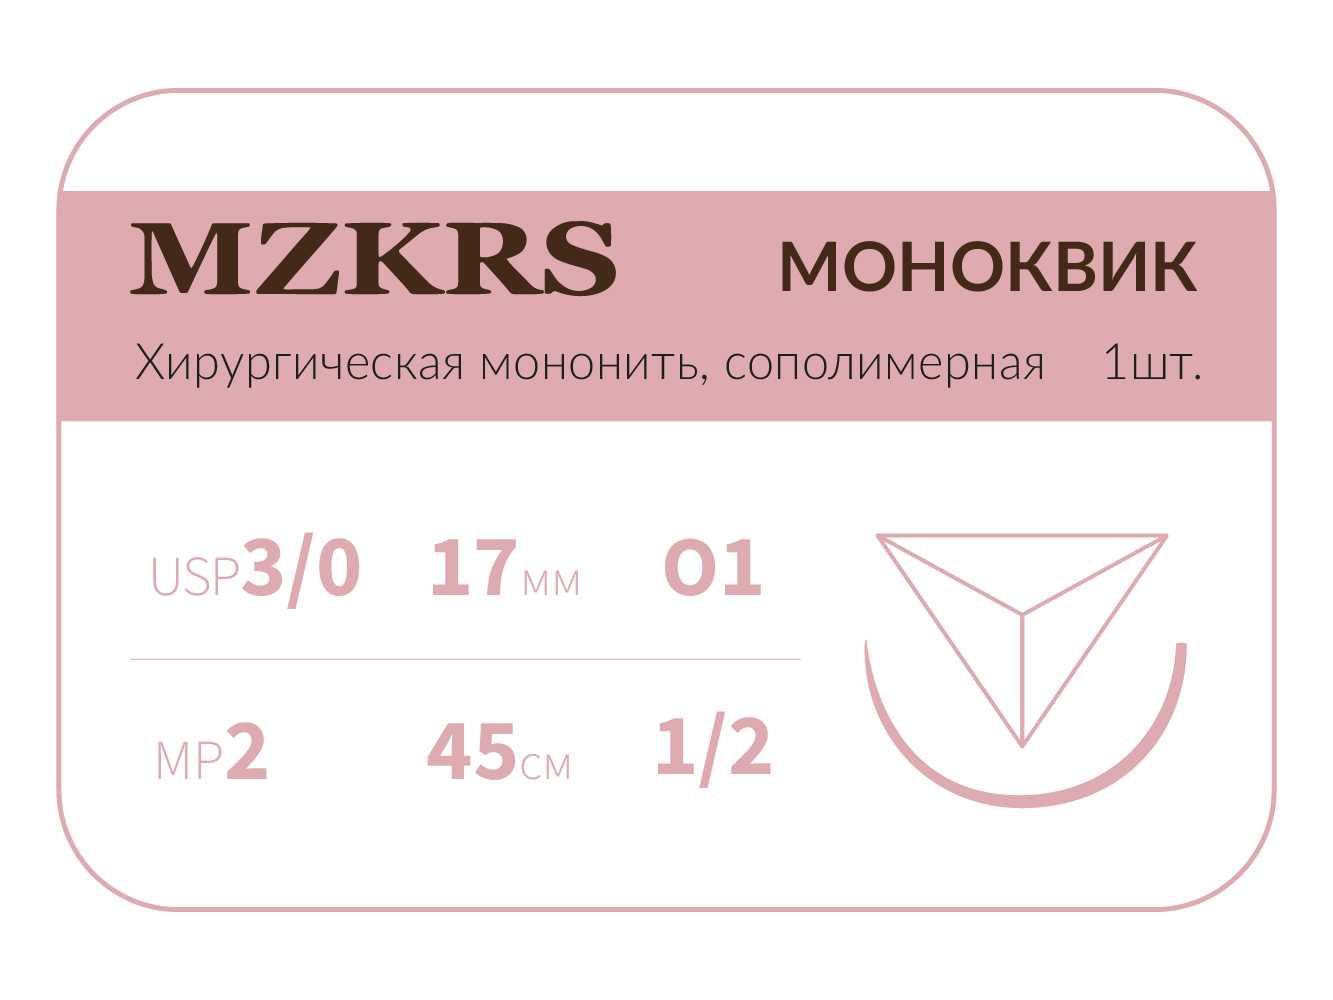 1712О1 Premium-3/0 (2)45 МОНК МОНОКВИК хирургическая мононить, сополимерная, MZKRS (Россия)